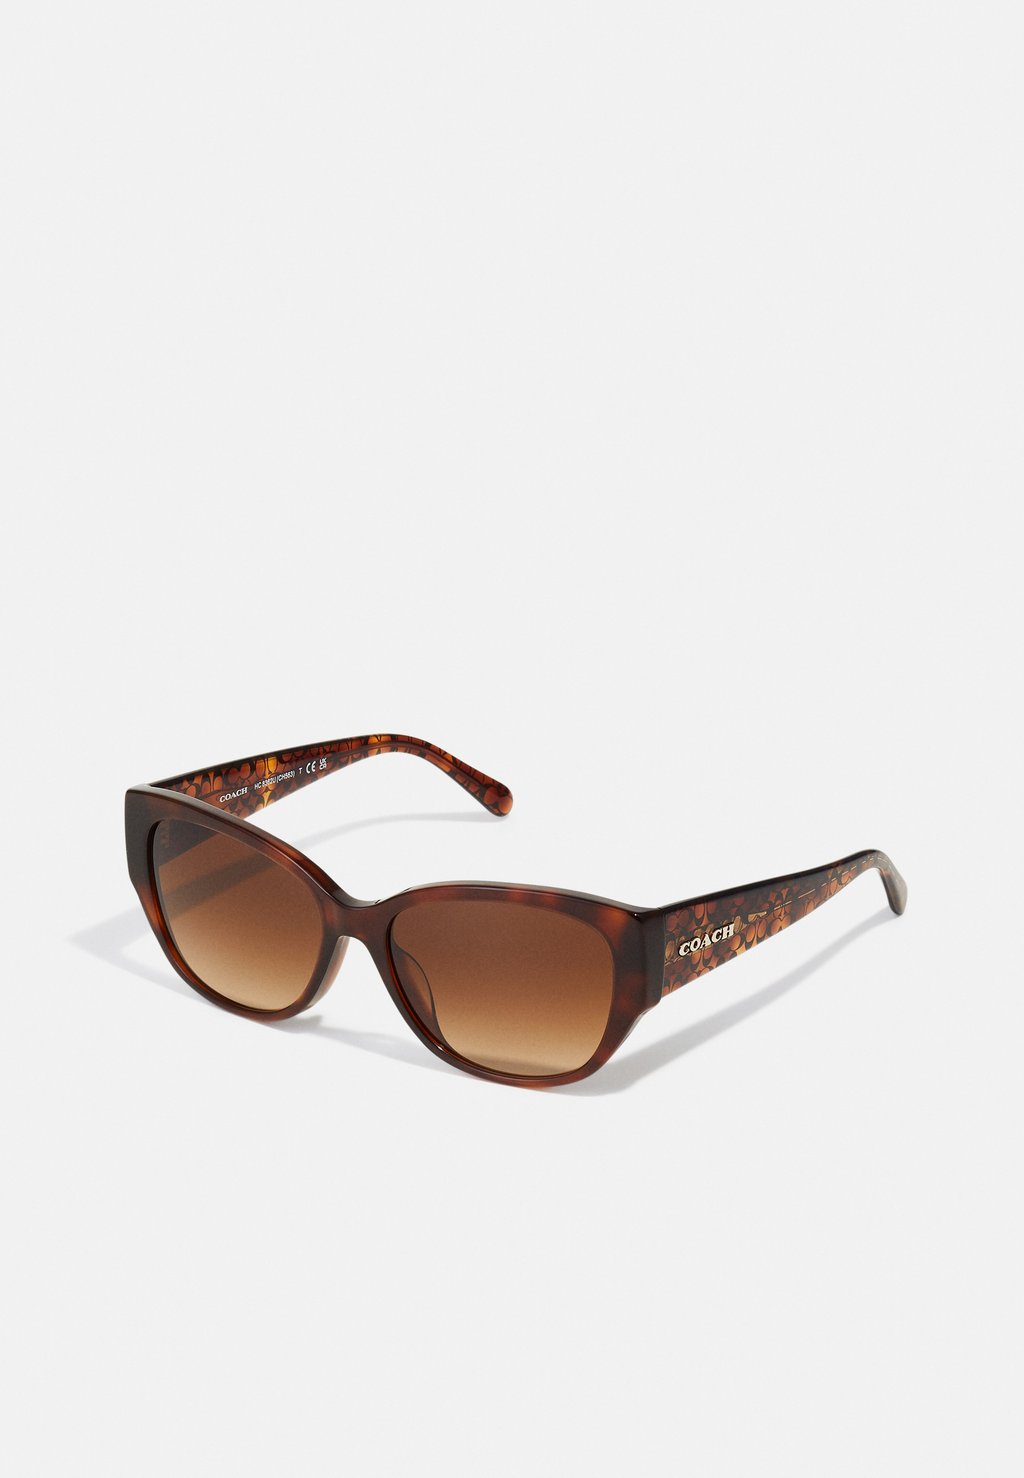 Солнцезащитные очки Coach, карамельно-черепаховый